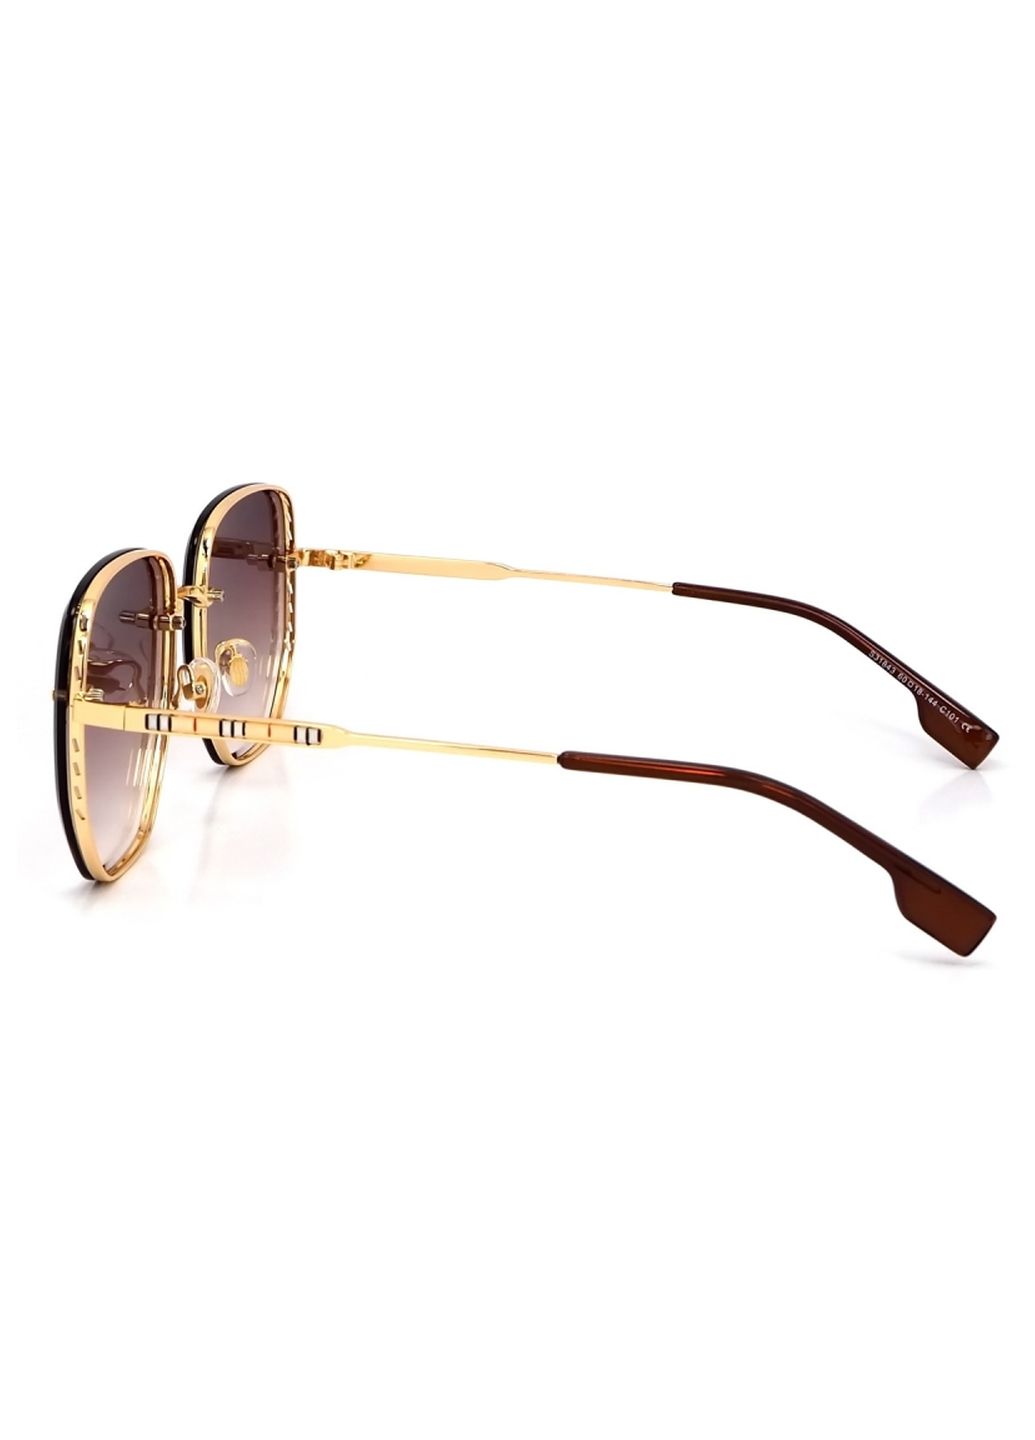 Купить Женские солнцезащитные очки Merlini с поляризацией S31843 117131 - Золотистый в интернет-магазине